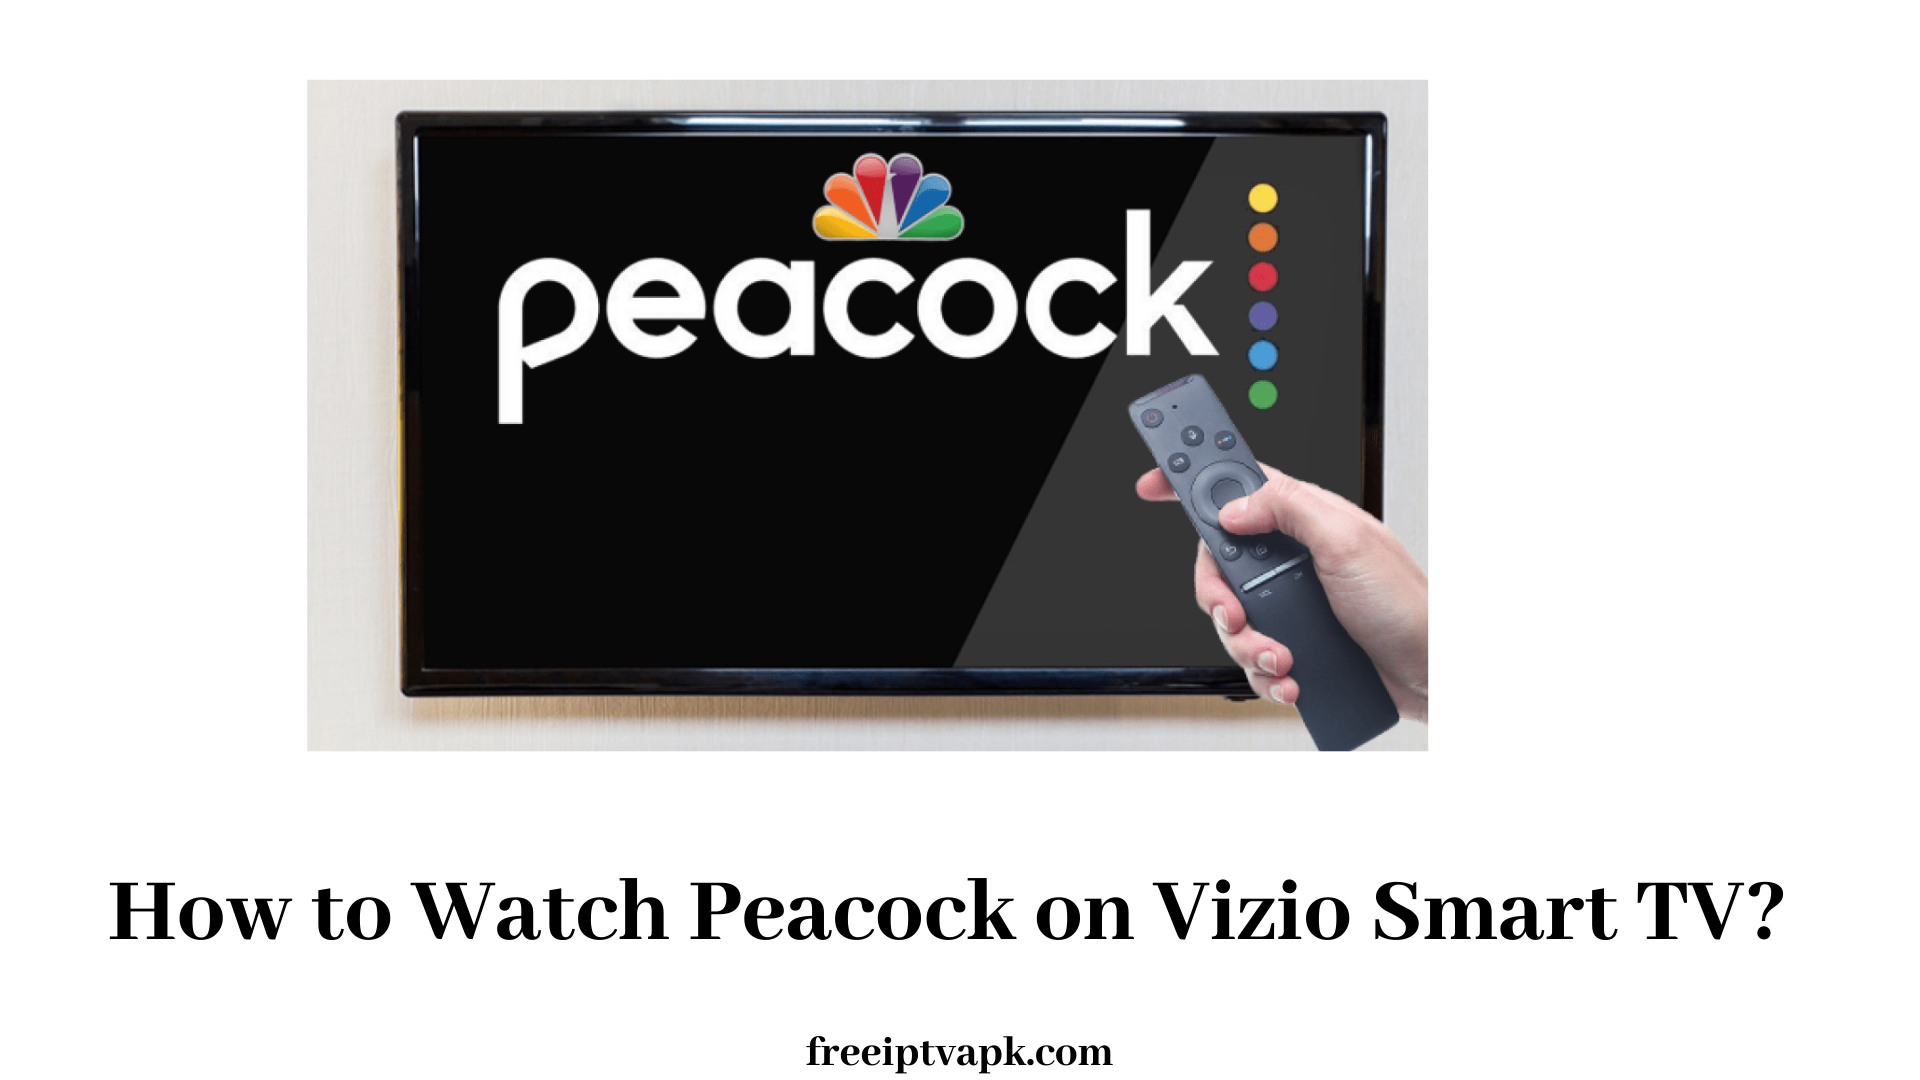 Peacock on Vizio Smart TV